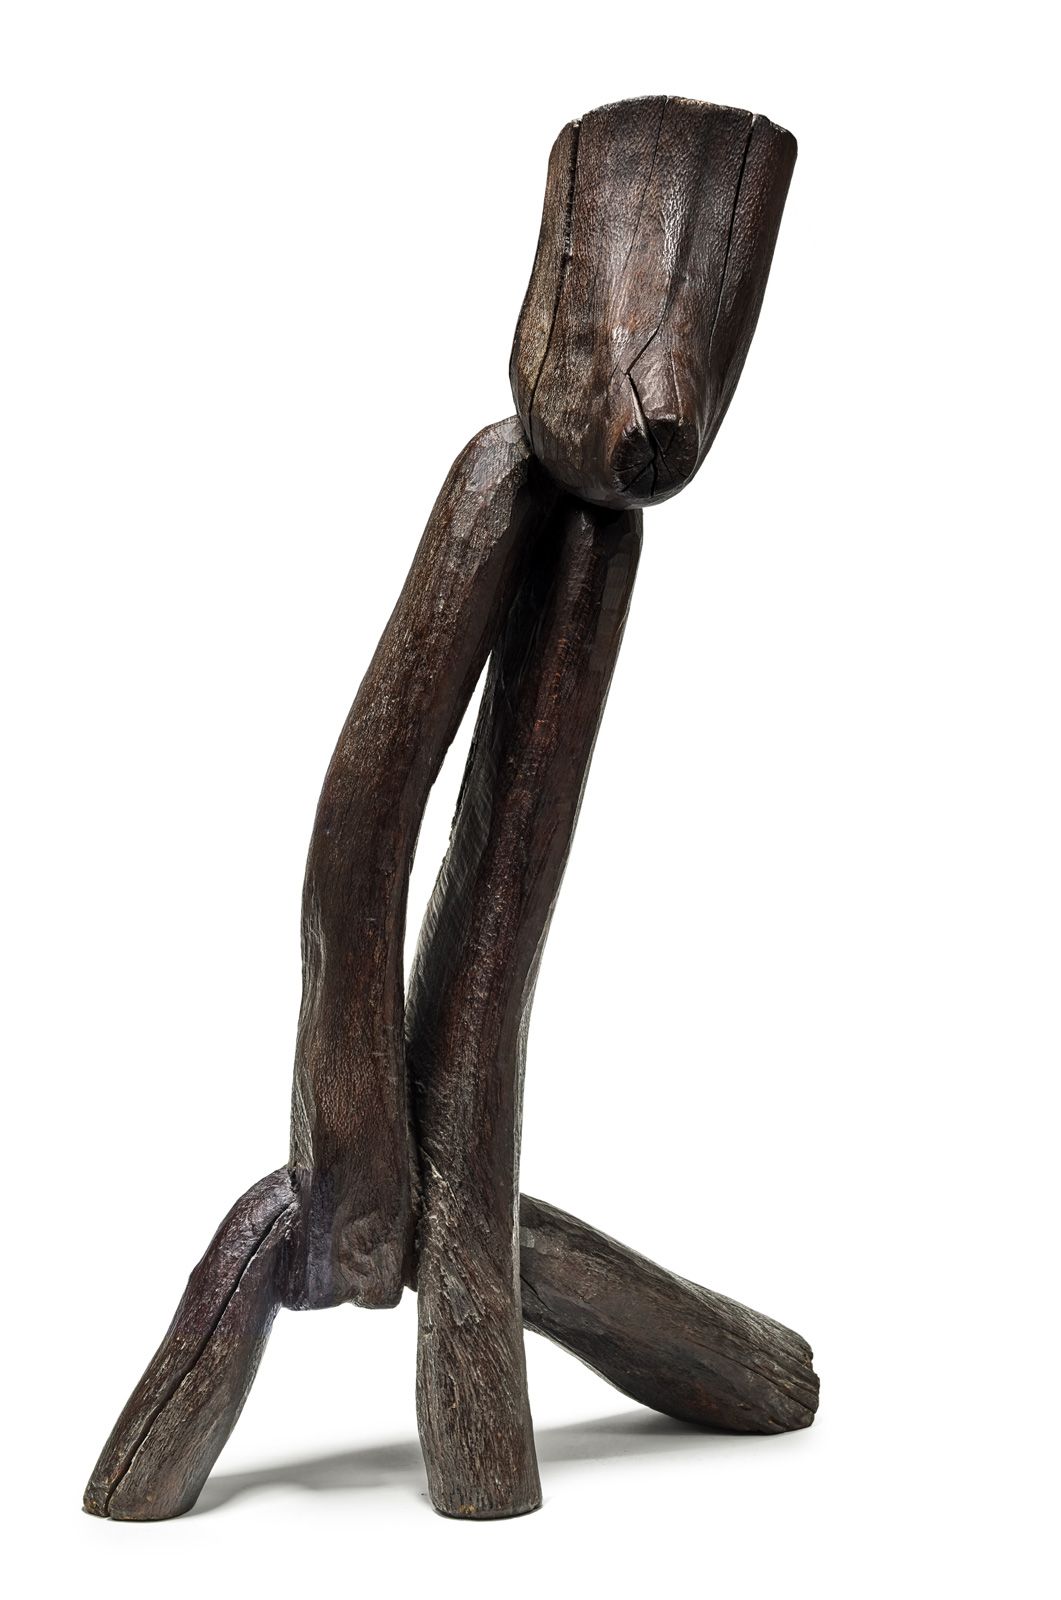 WANG KEPING (1949) 
人物，约1990年

木雕，背部下方有签名

H.82.5厘米



来源：欧洲私人收藏



购买者将获得日期为17/&hellip;